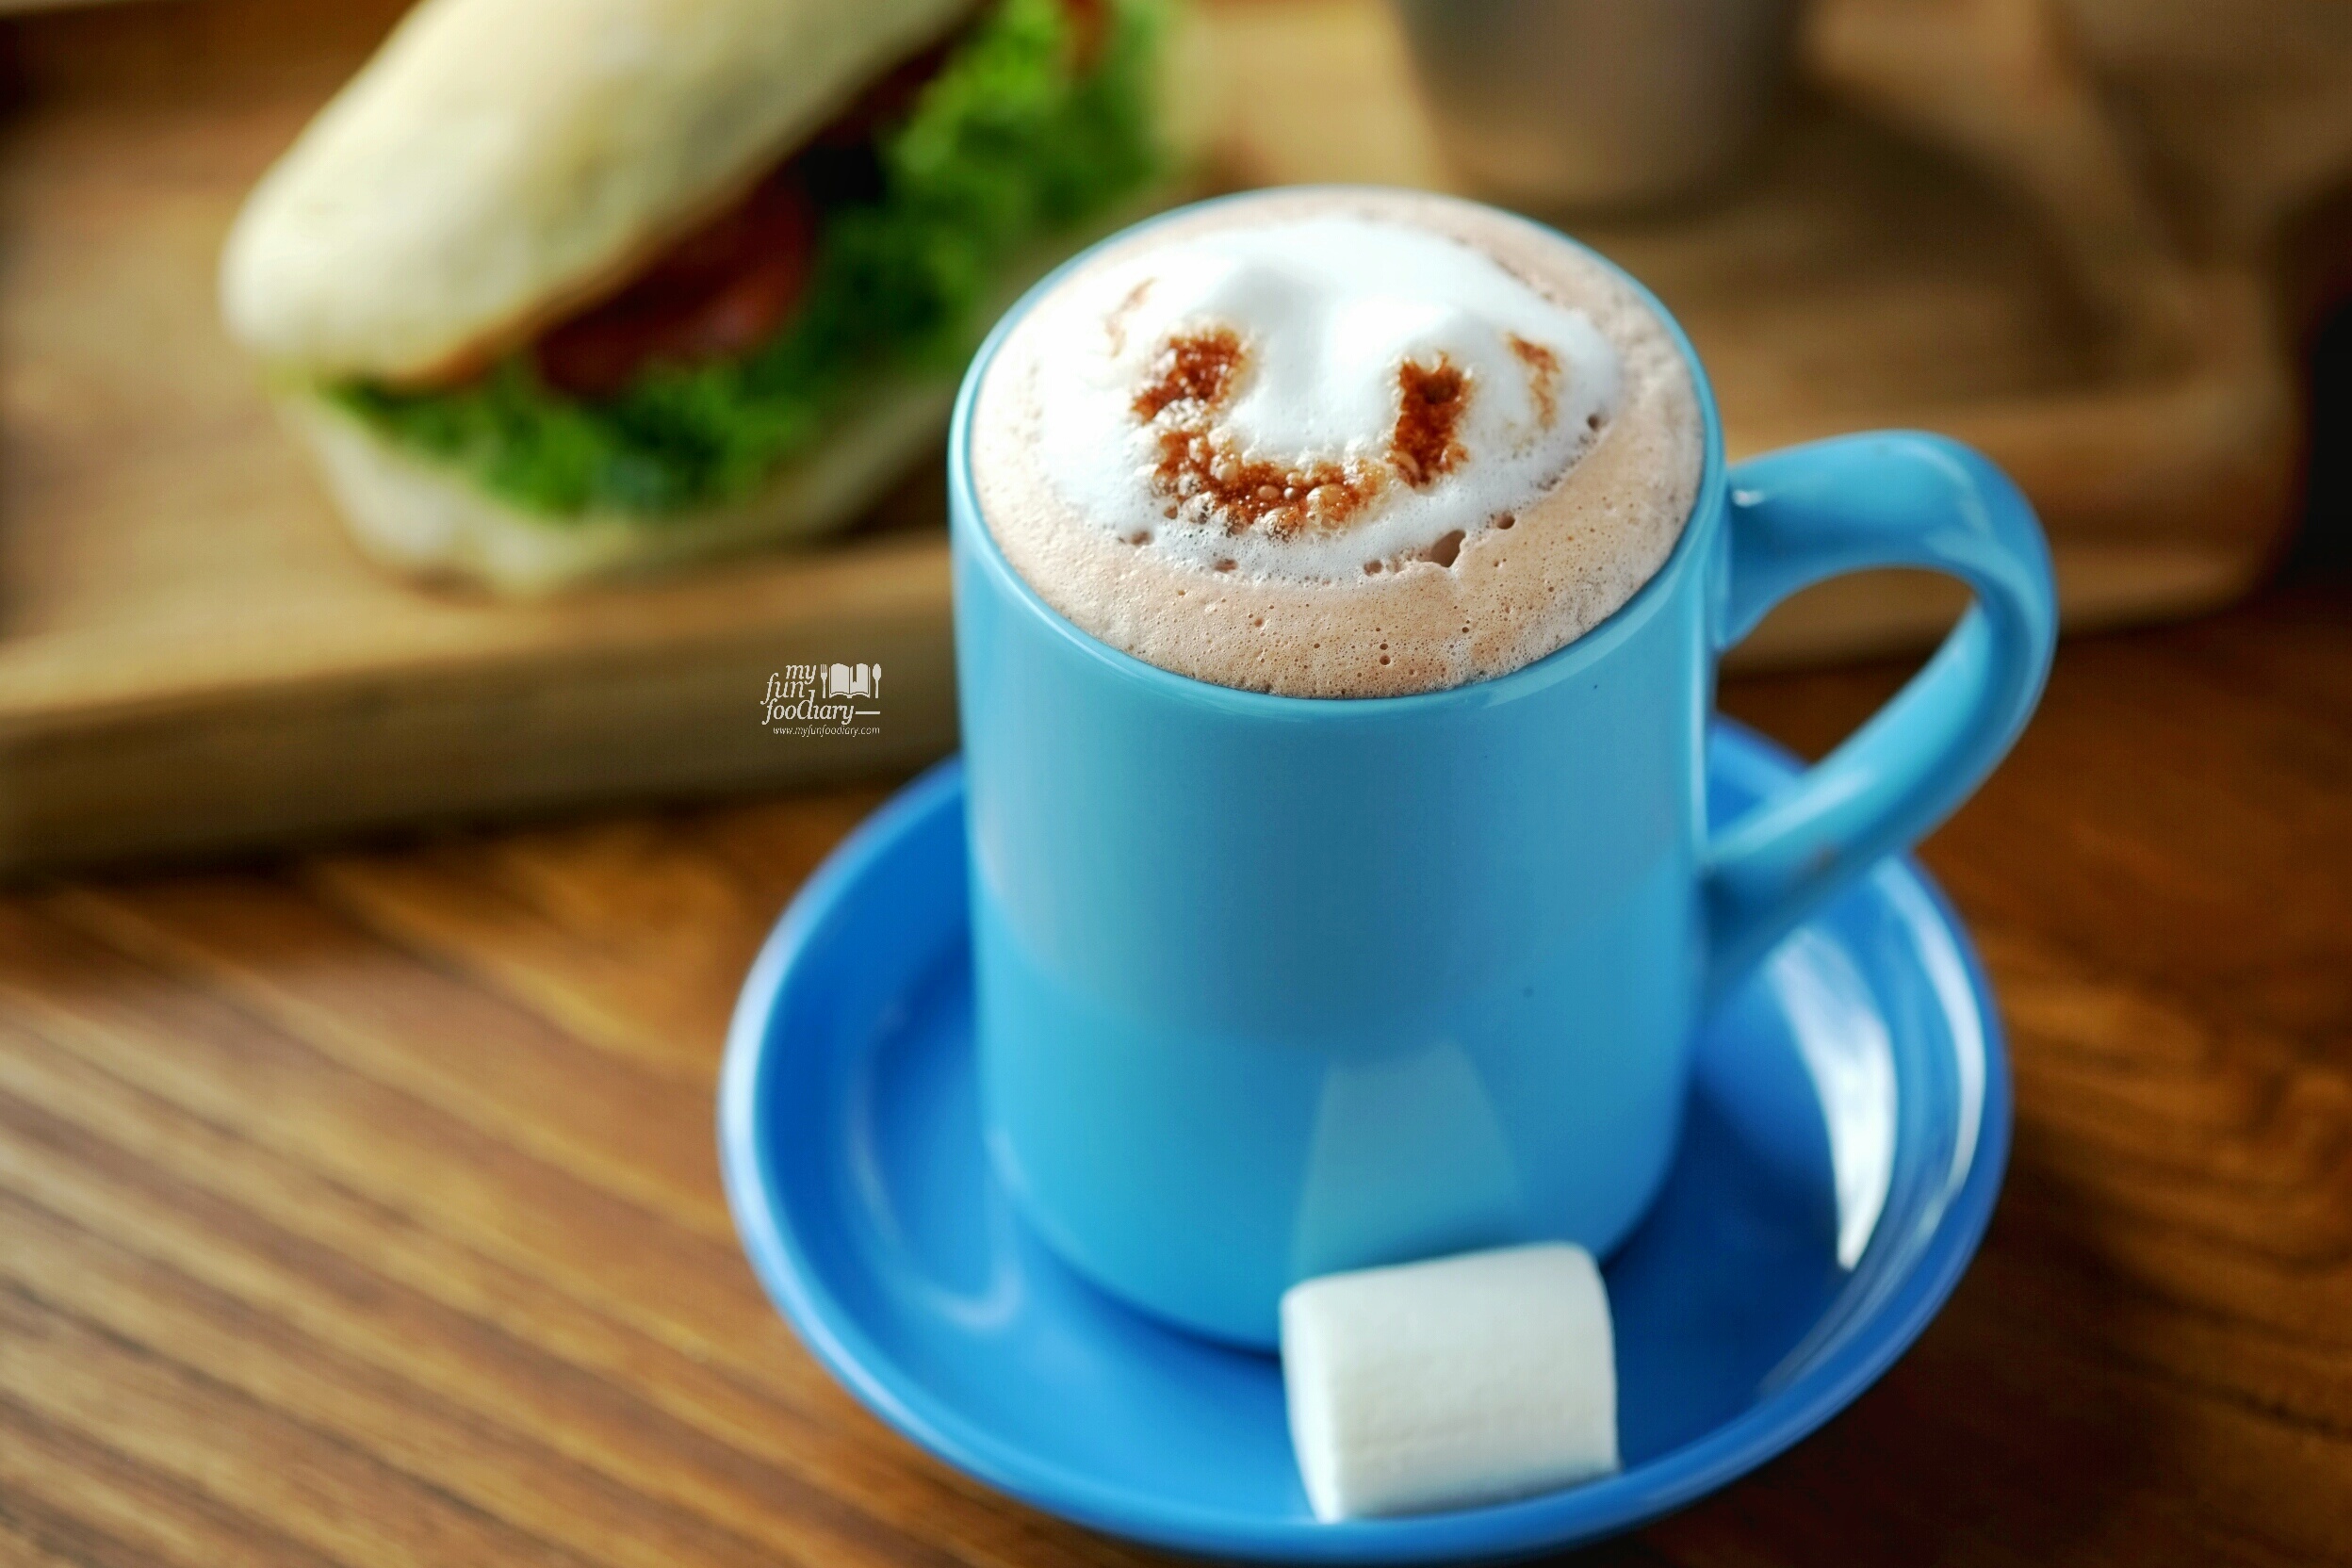 Hot Chocolate at Brown Bag Kemang by Myfunfoodiary